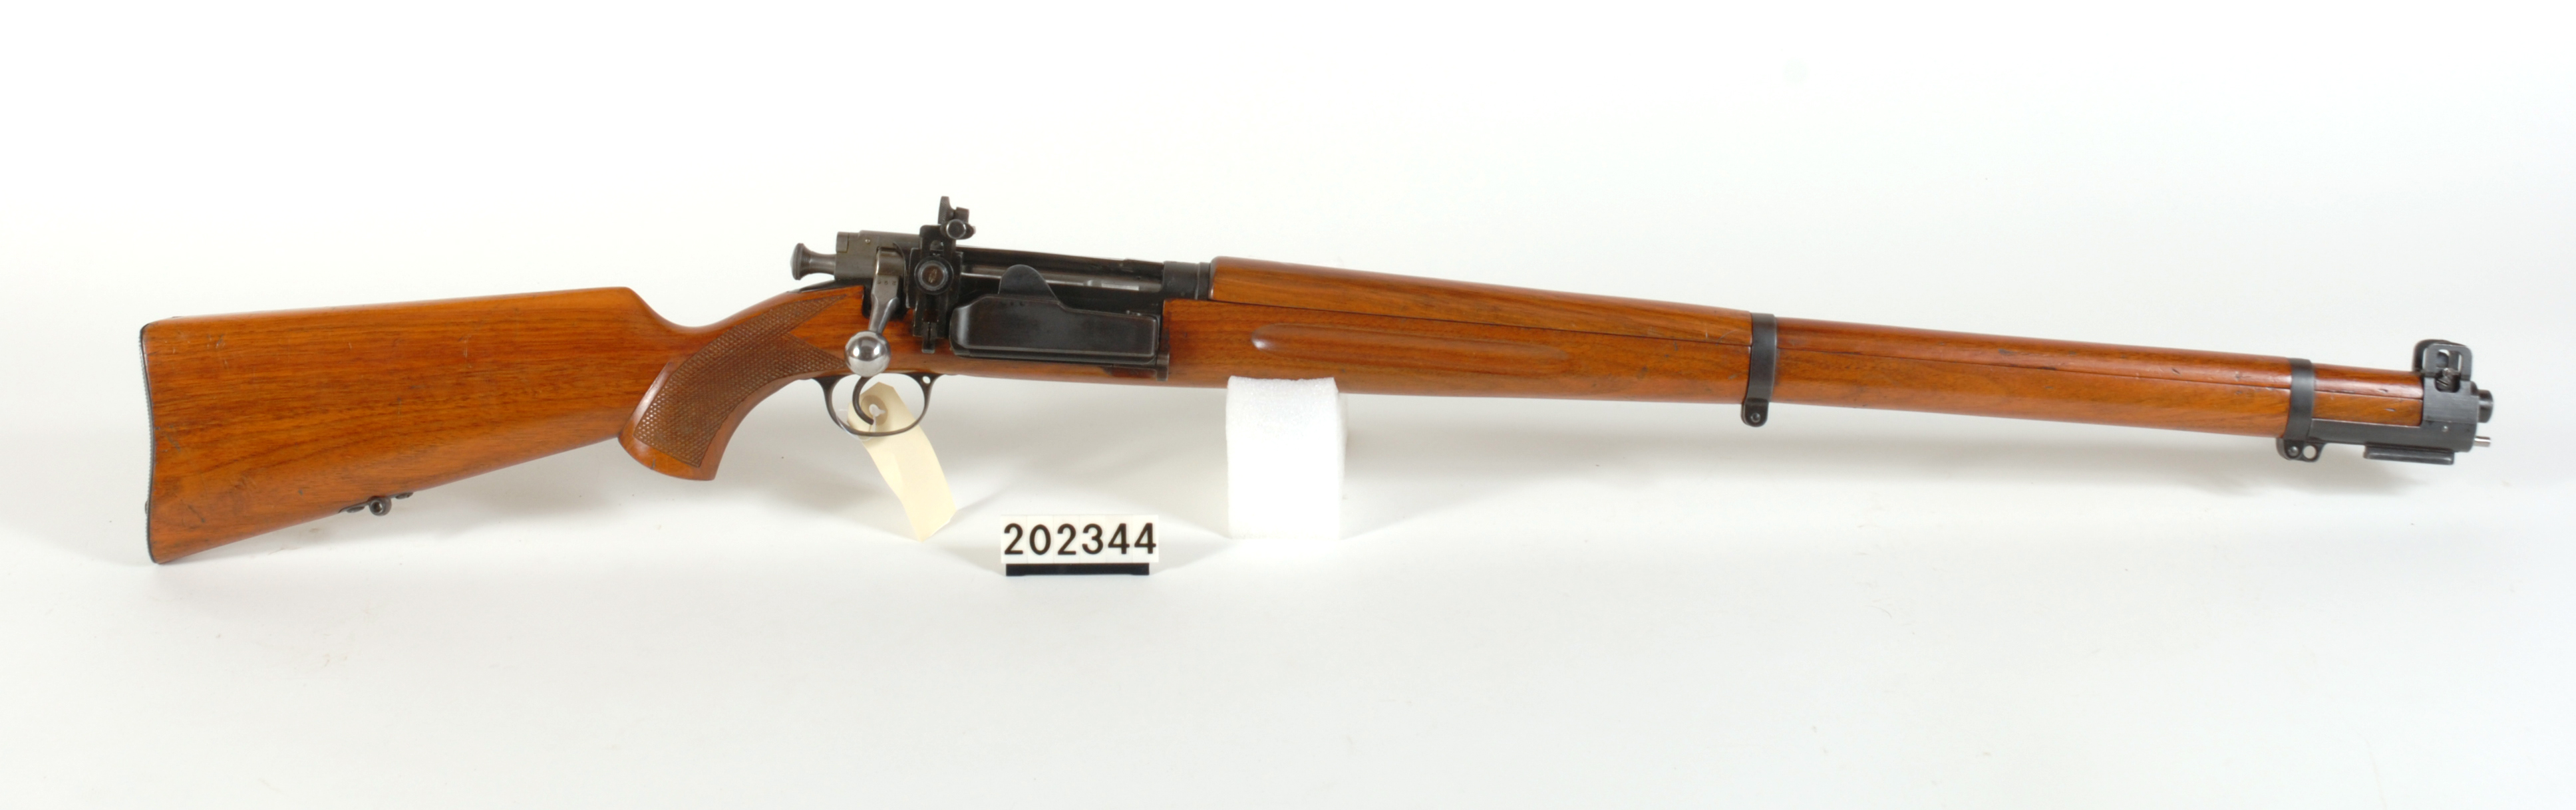 ./guns/rifle/bilder/Rifle-Kongsberg-Krag-M1923-FMU.202344.jpg